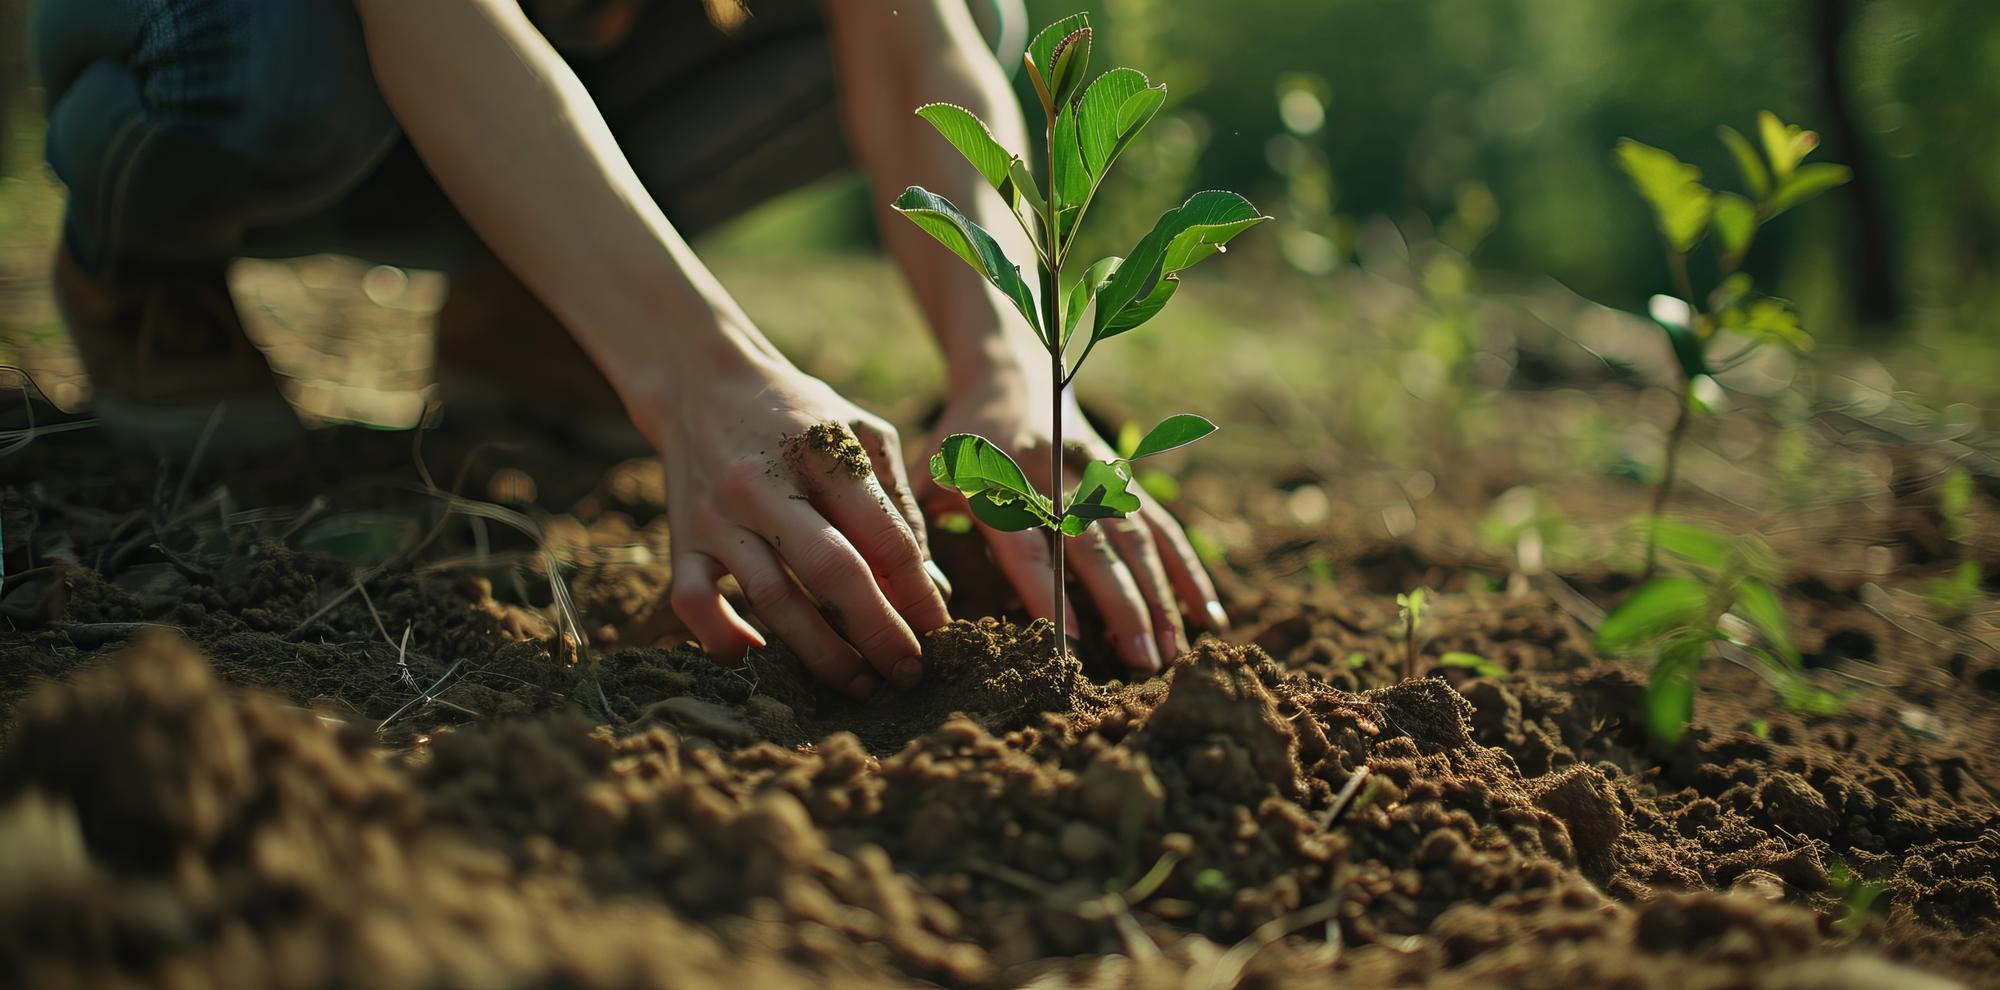 Девушка сажает зеленые растения в землю.